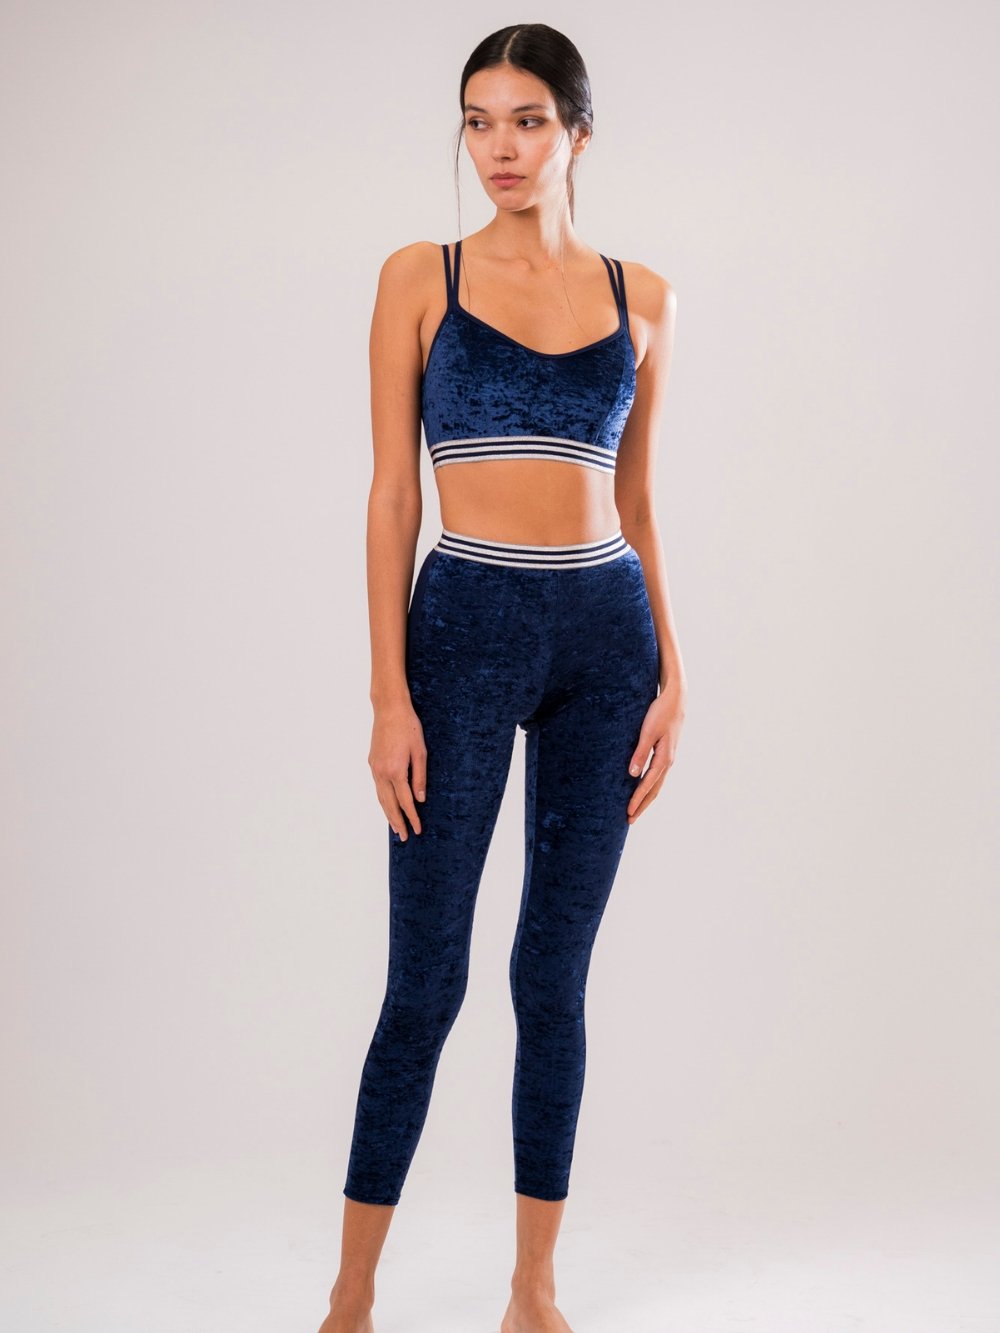 Blue Velvet Sports Leggings - Luxury underwear and lingerie made